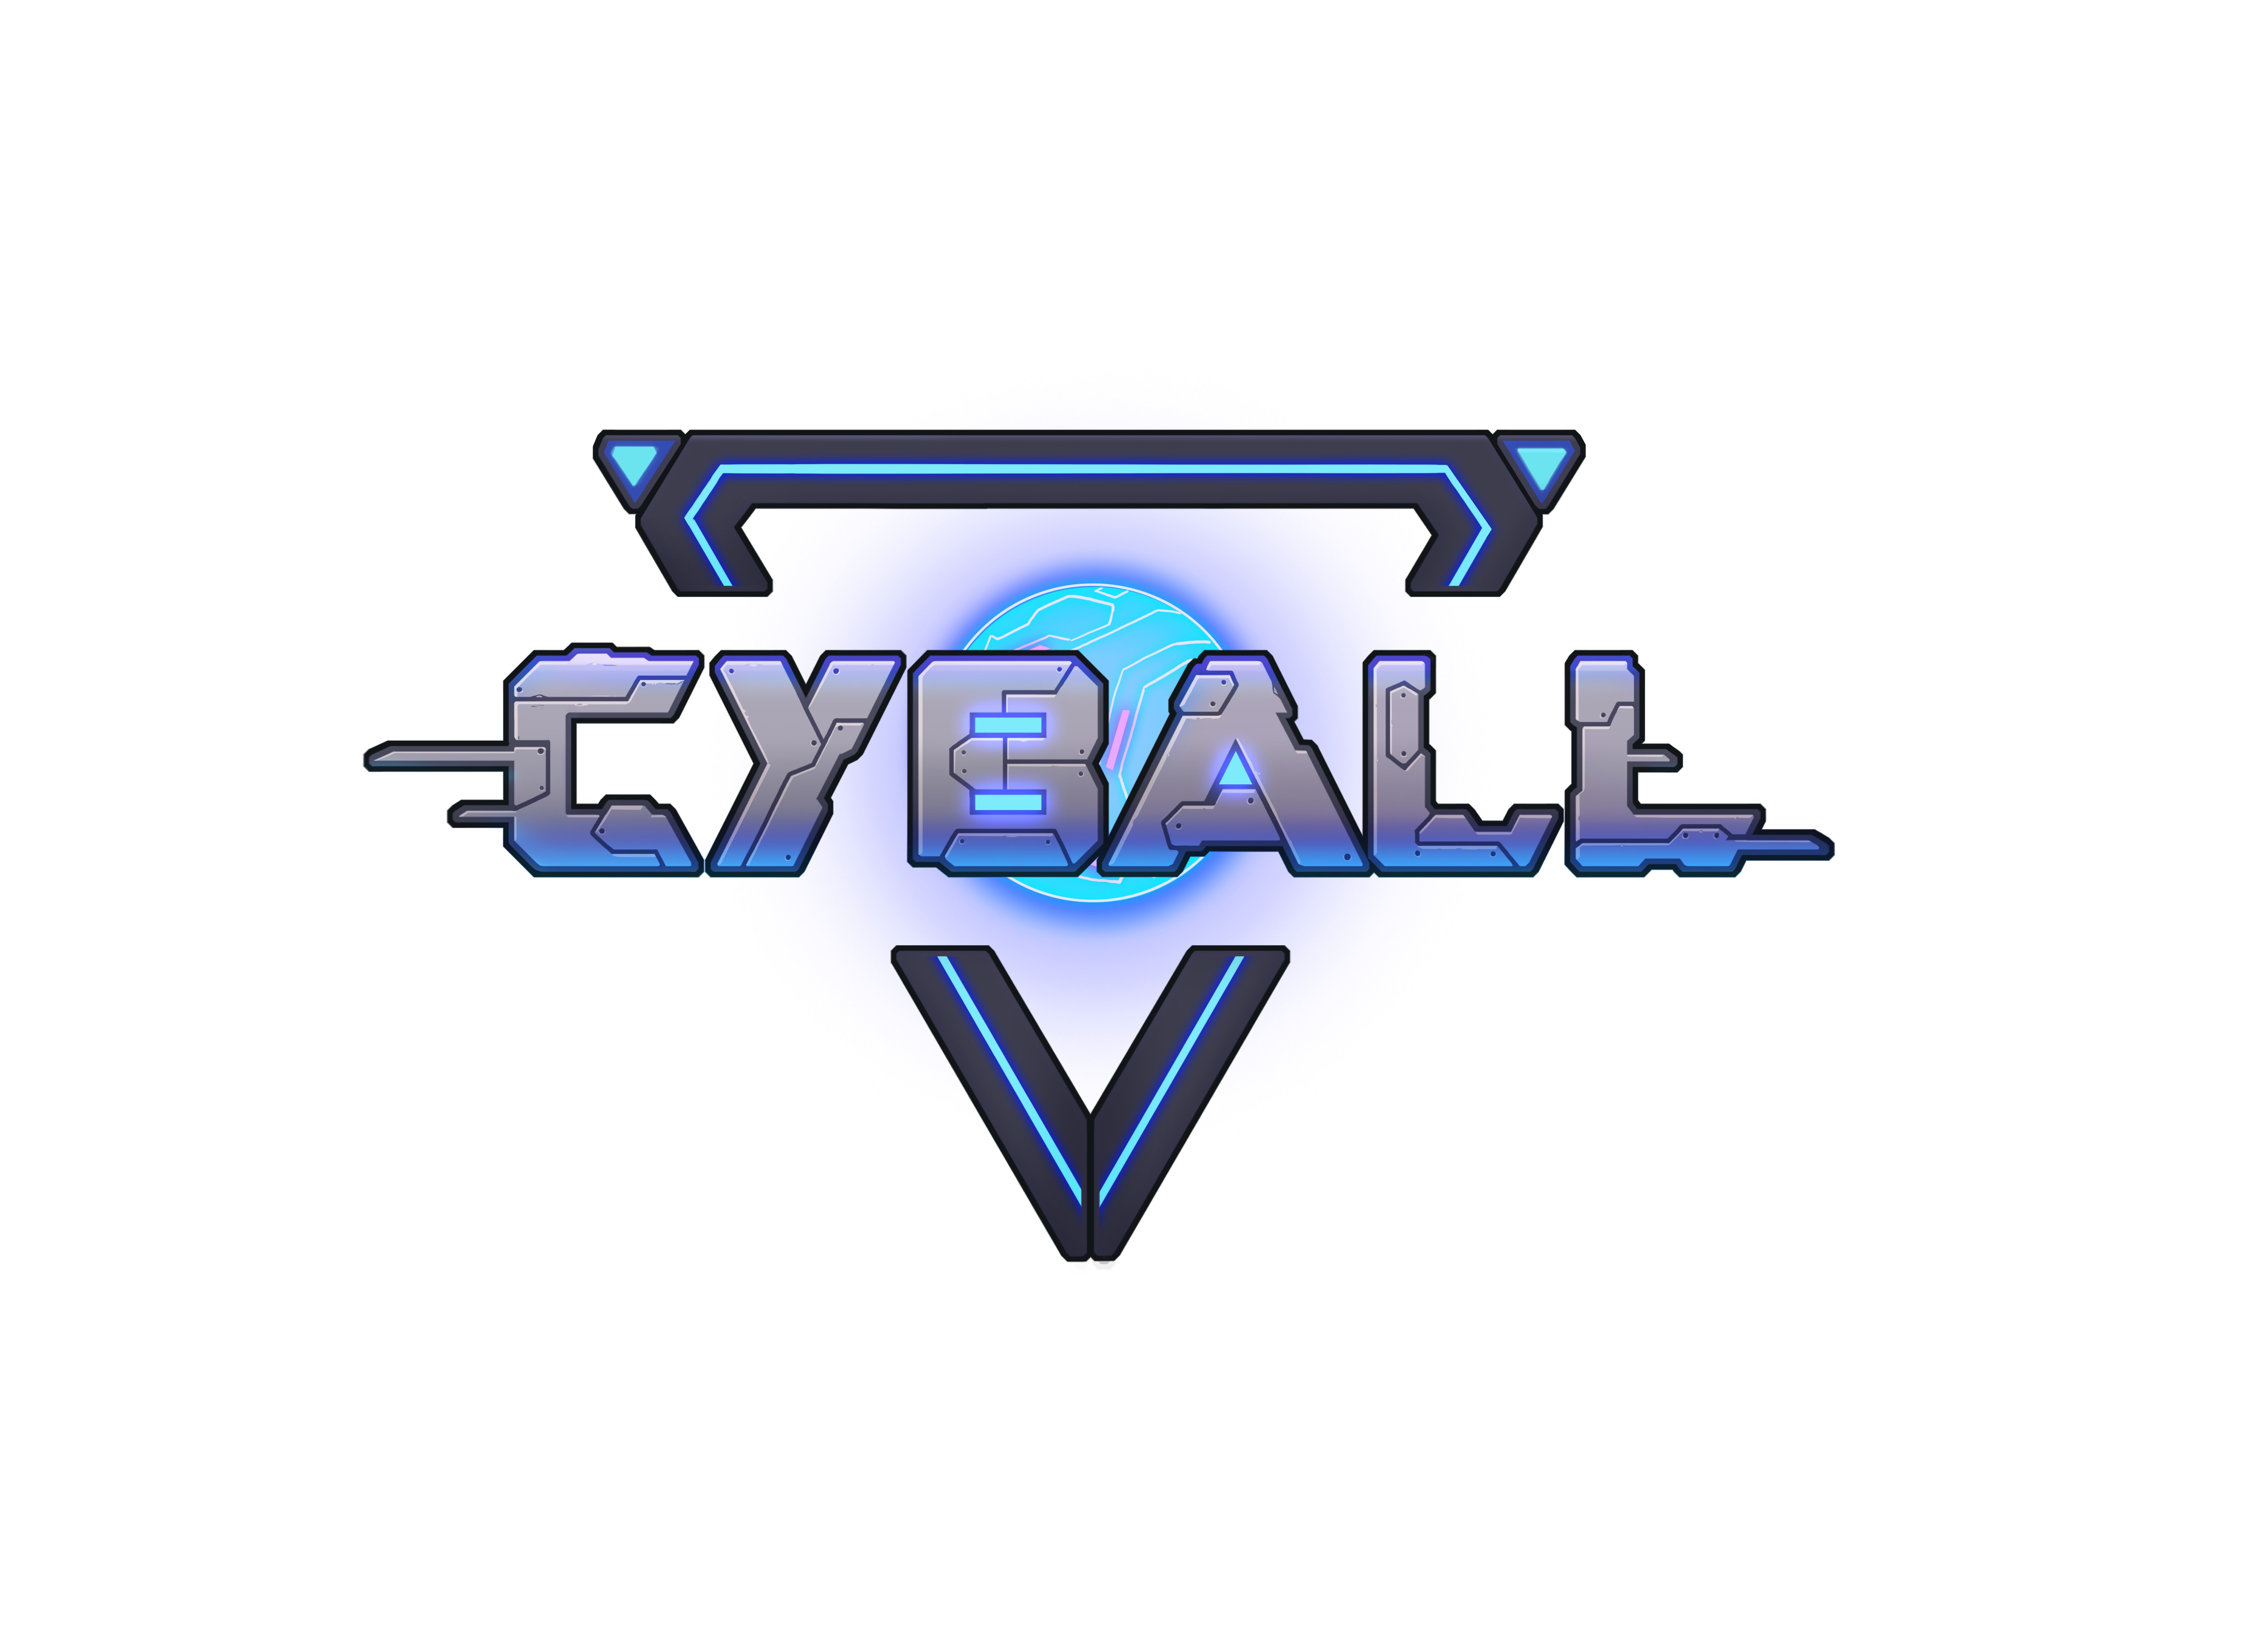 cyball